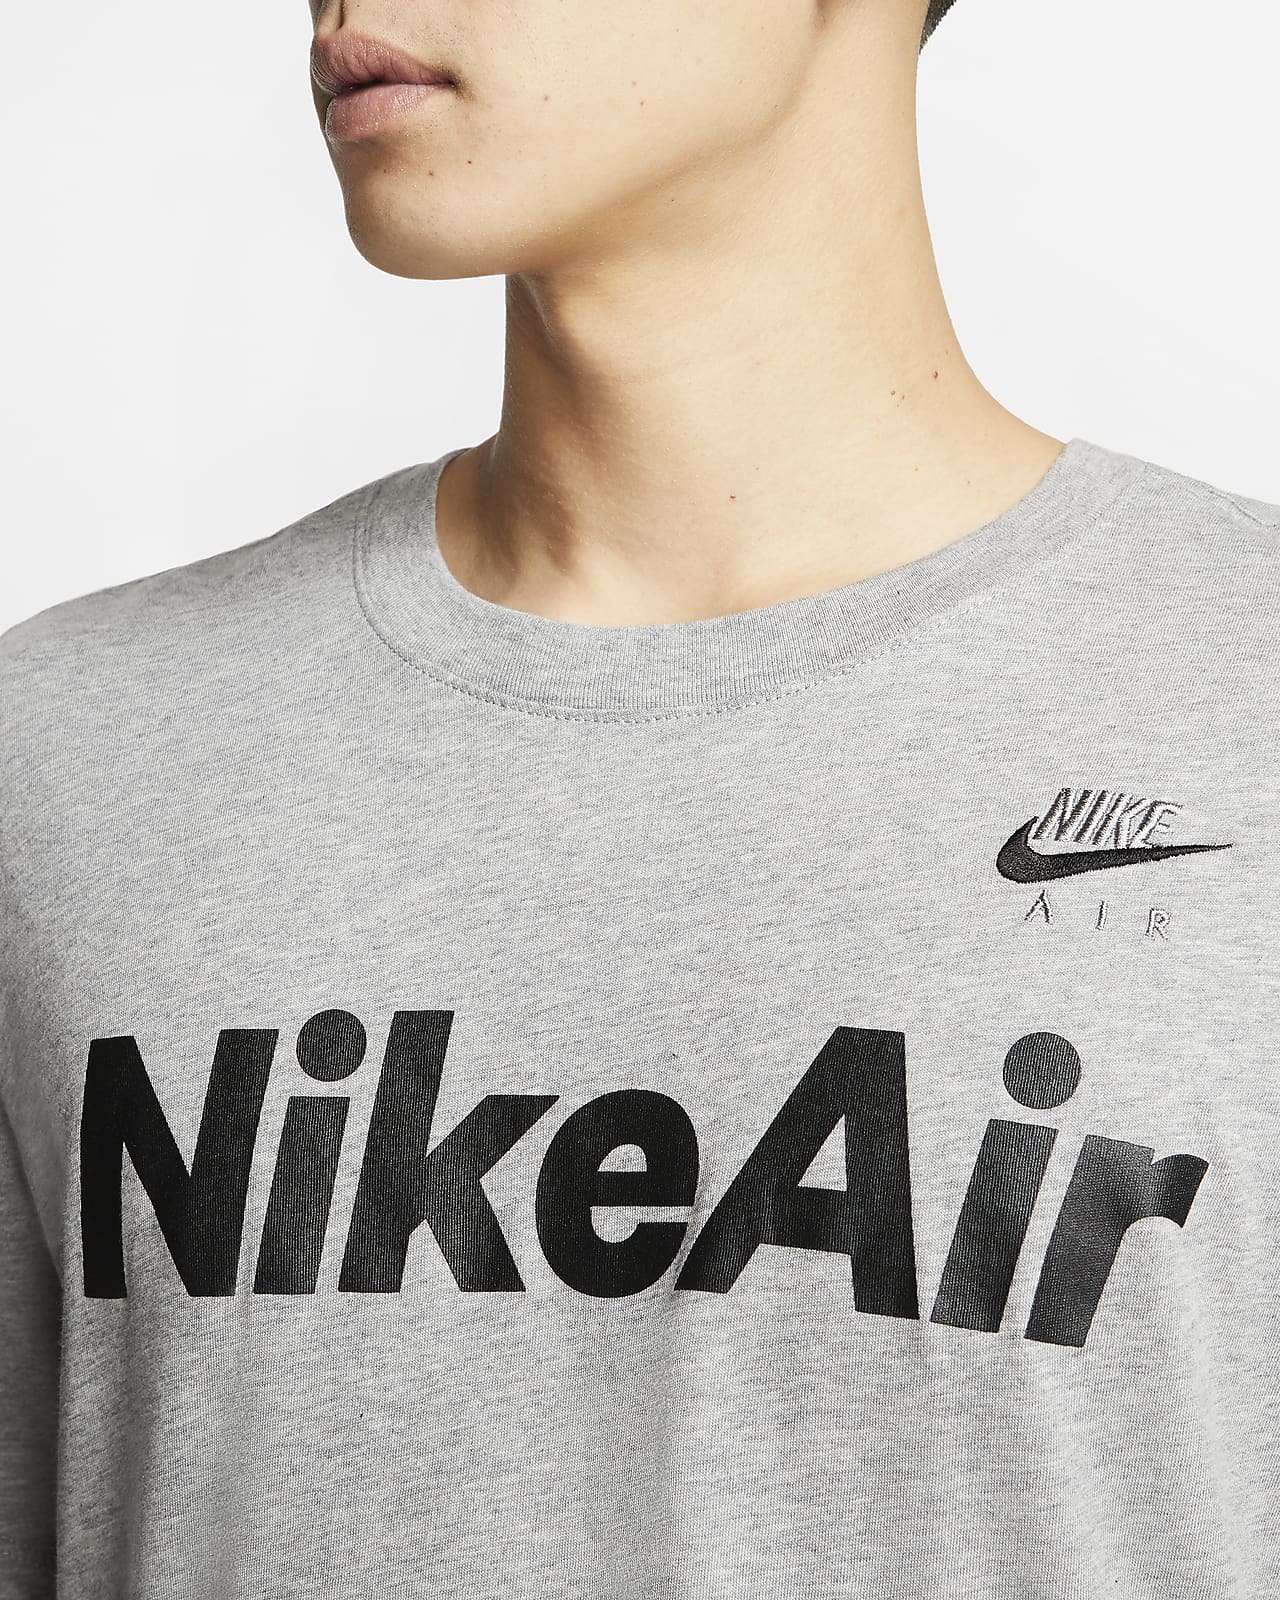 T-shirt Nike Air för män